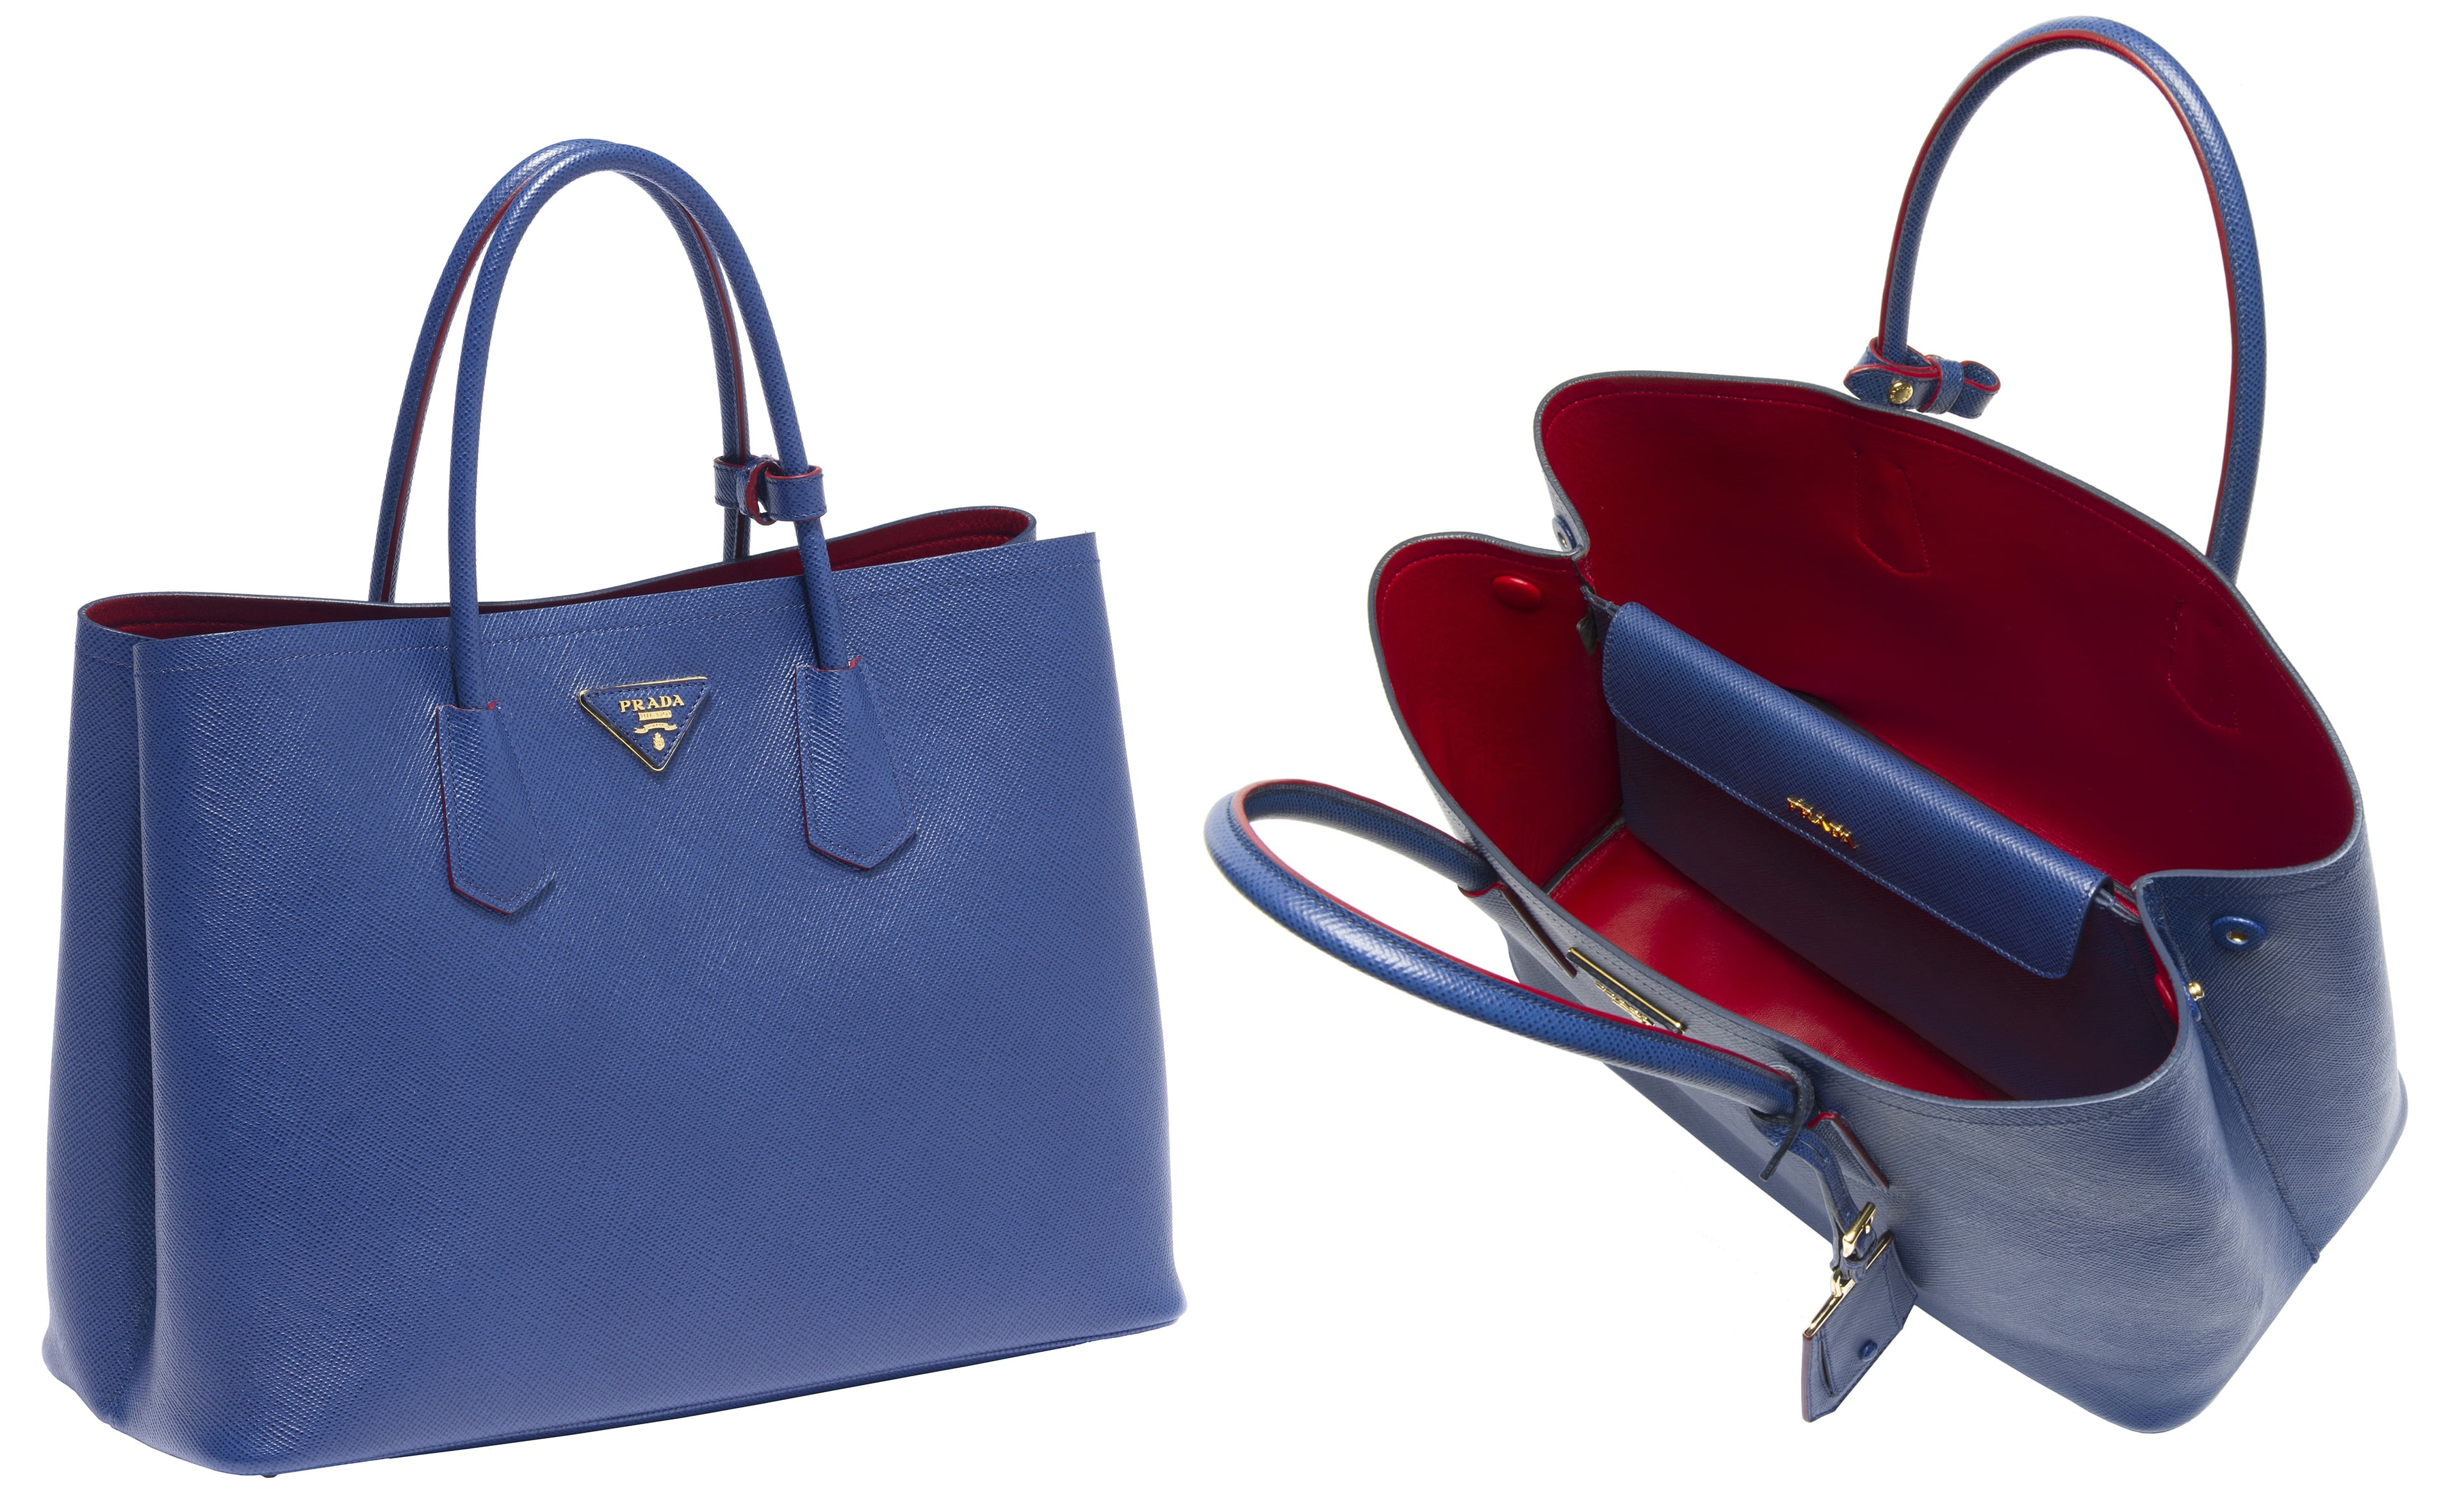 Prada Galleria bag review (Medium, Blue) 